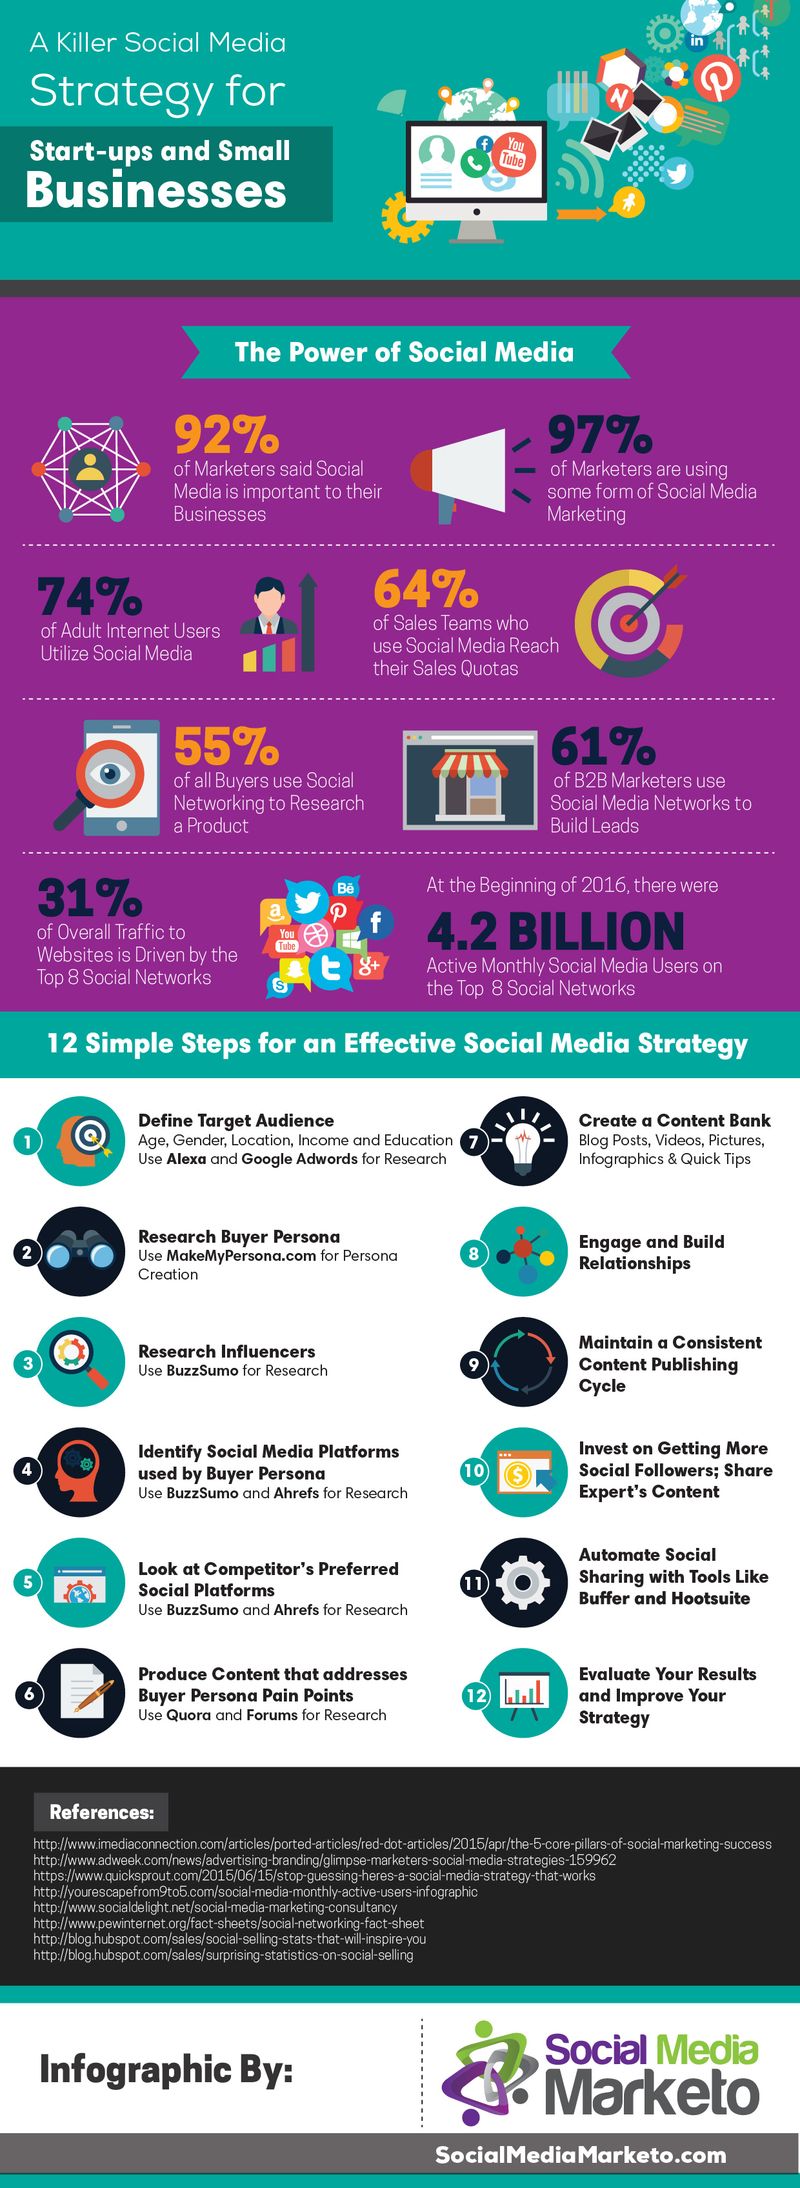 12 pasos para una perfecta Estrategia de Social Media Marketing